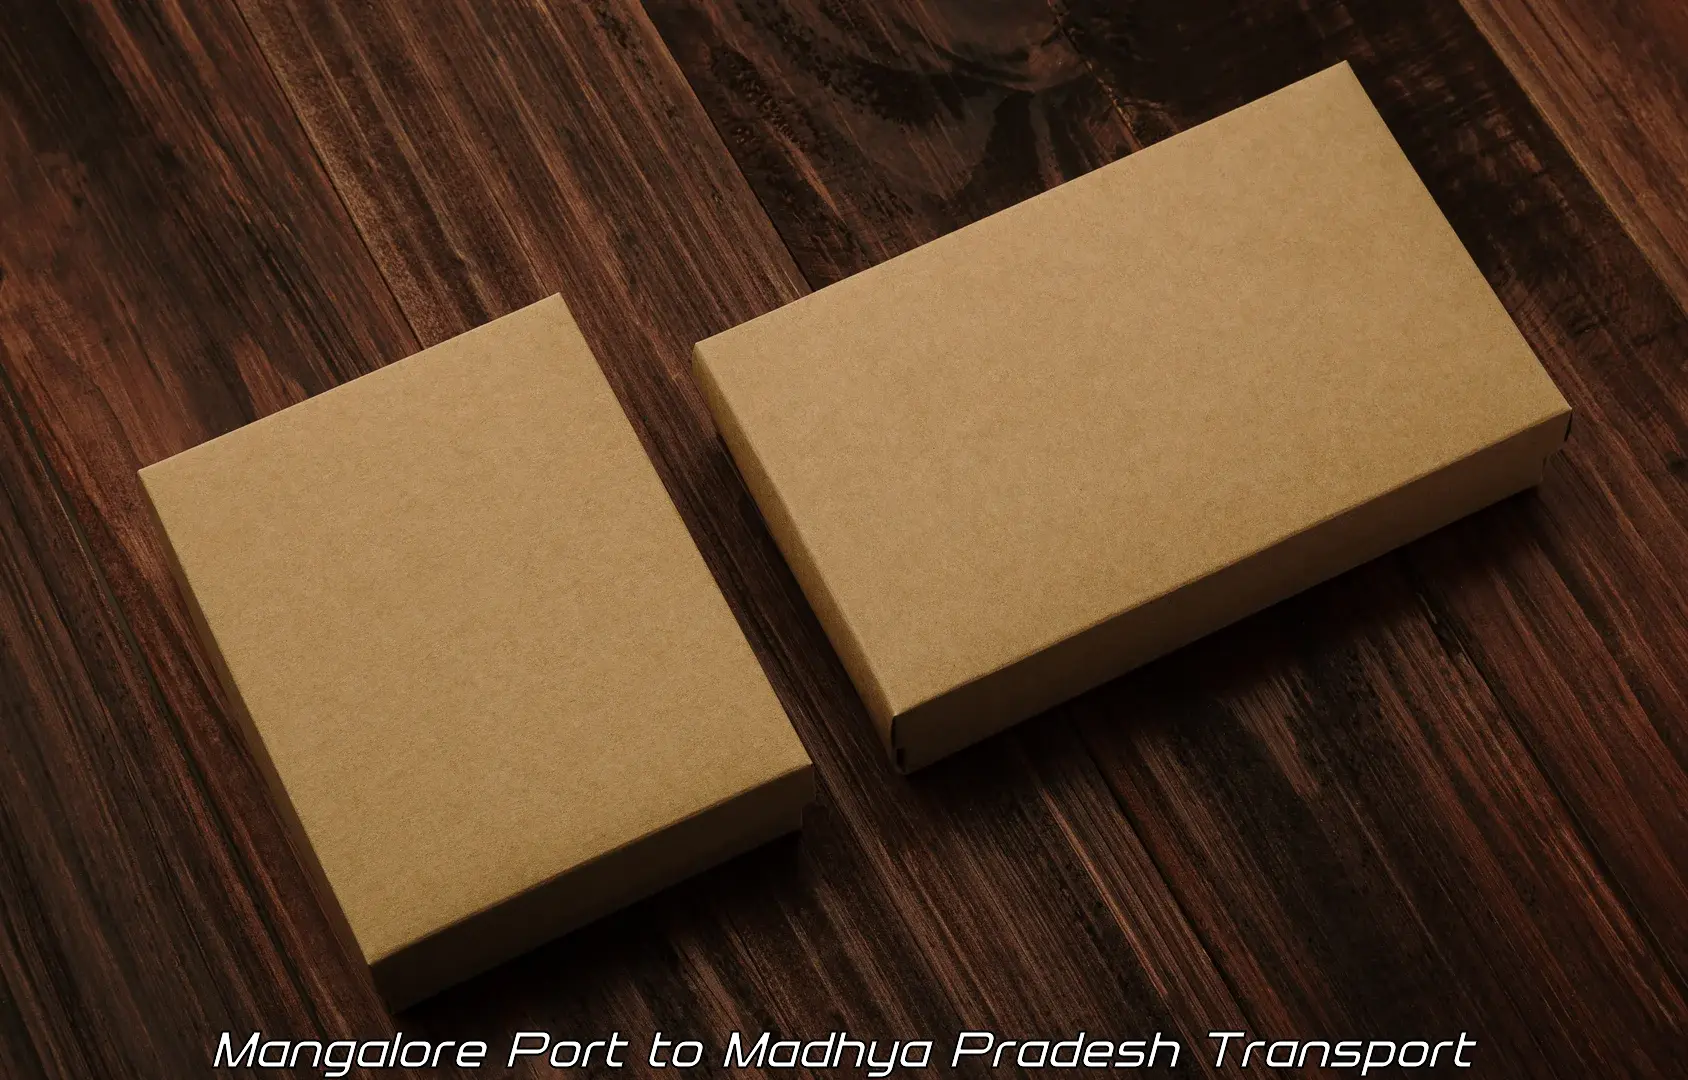 Furniture transport service Mangalore Port to Sohagi